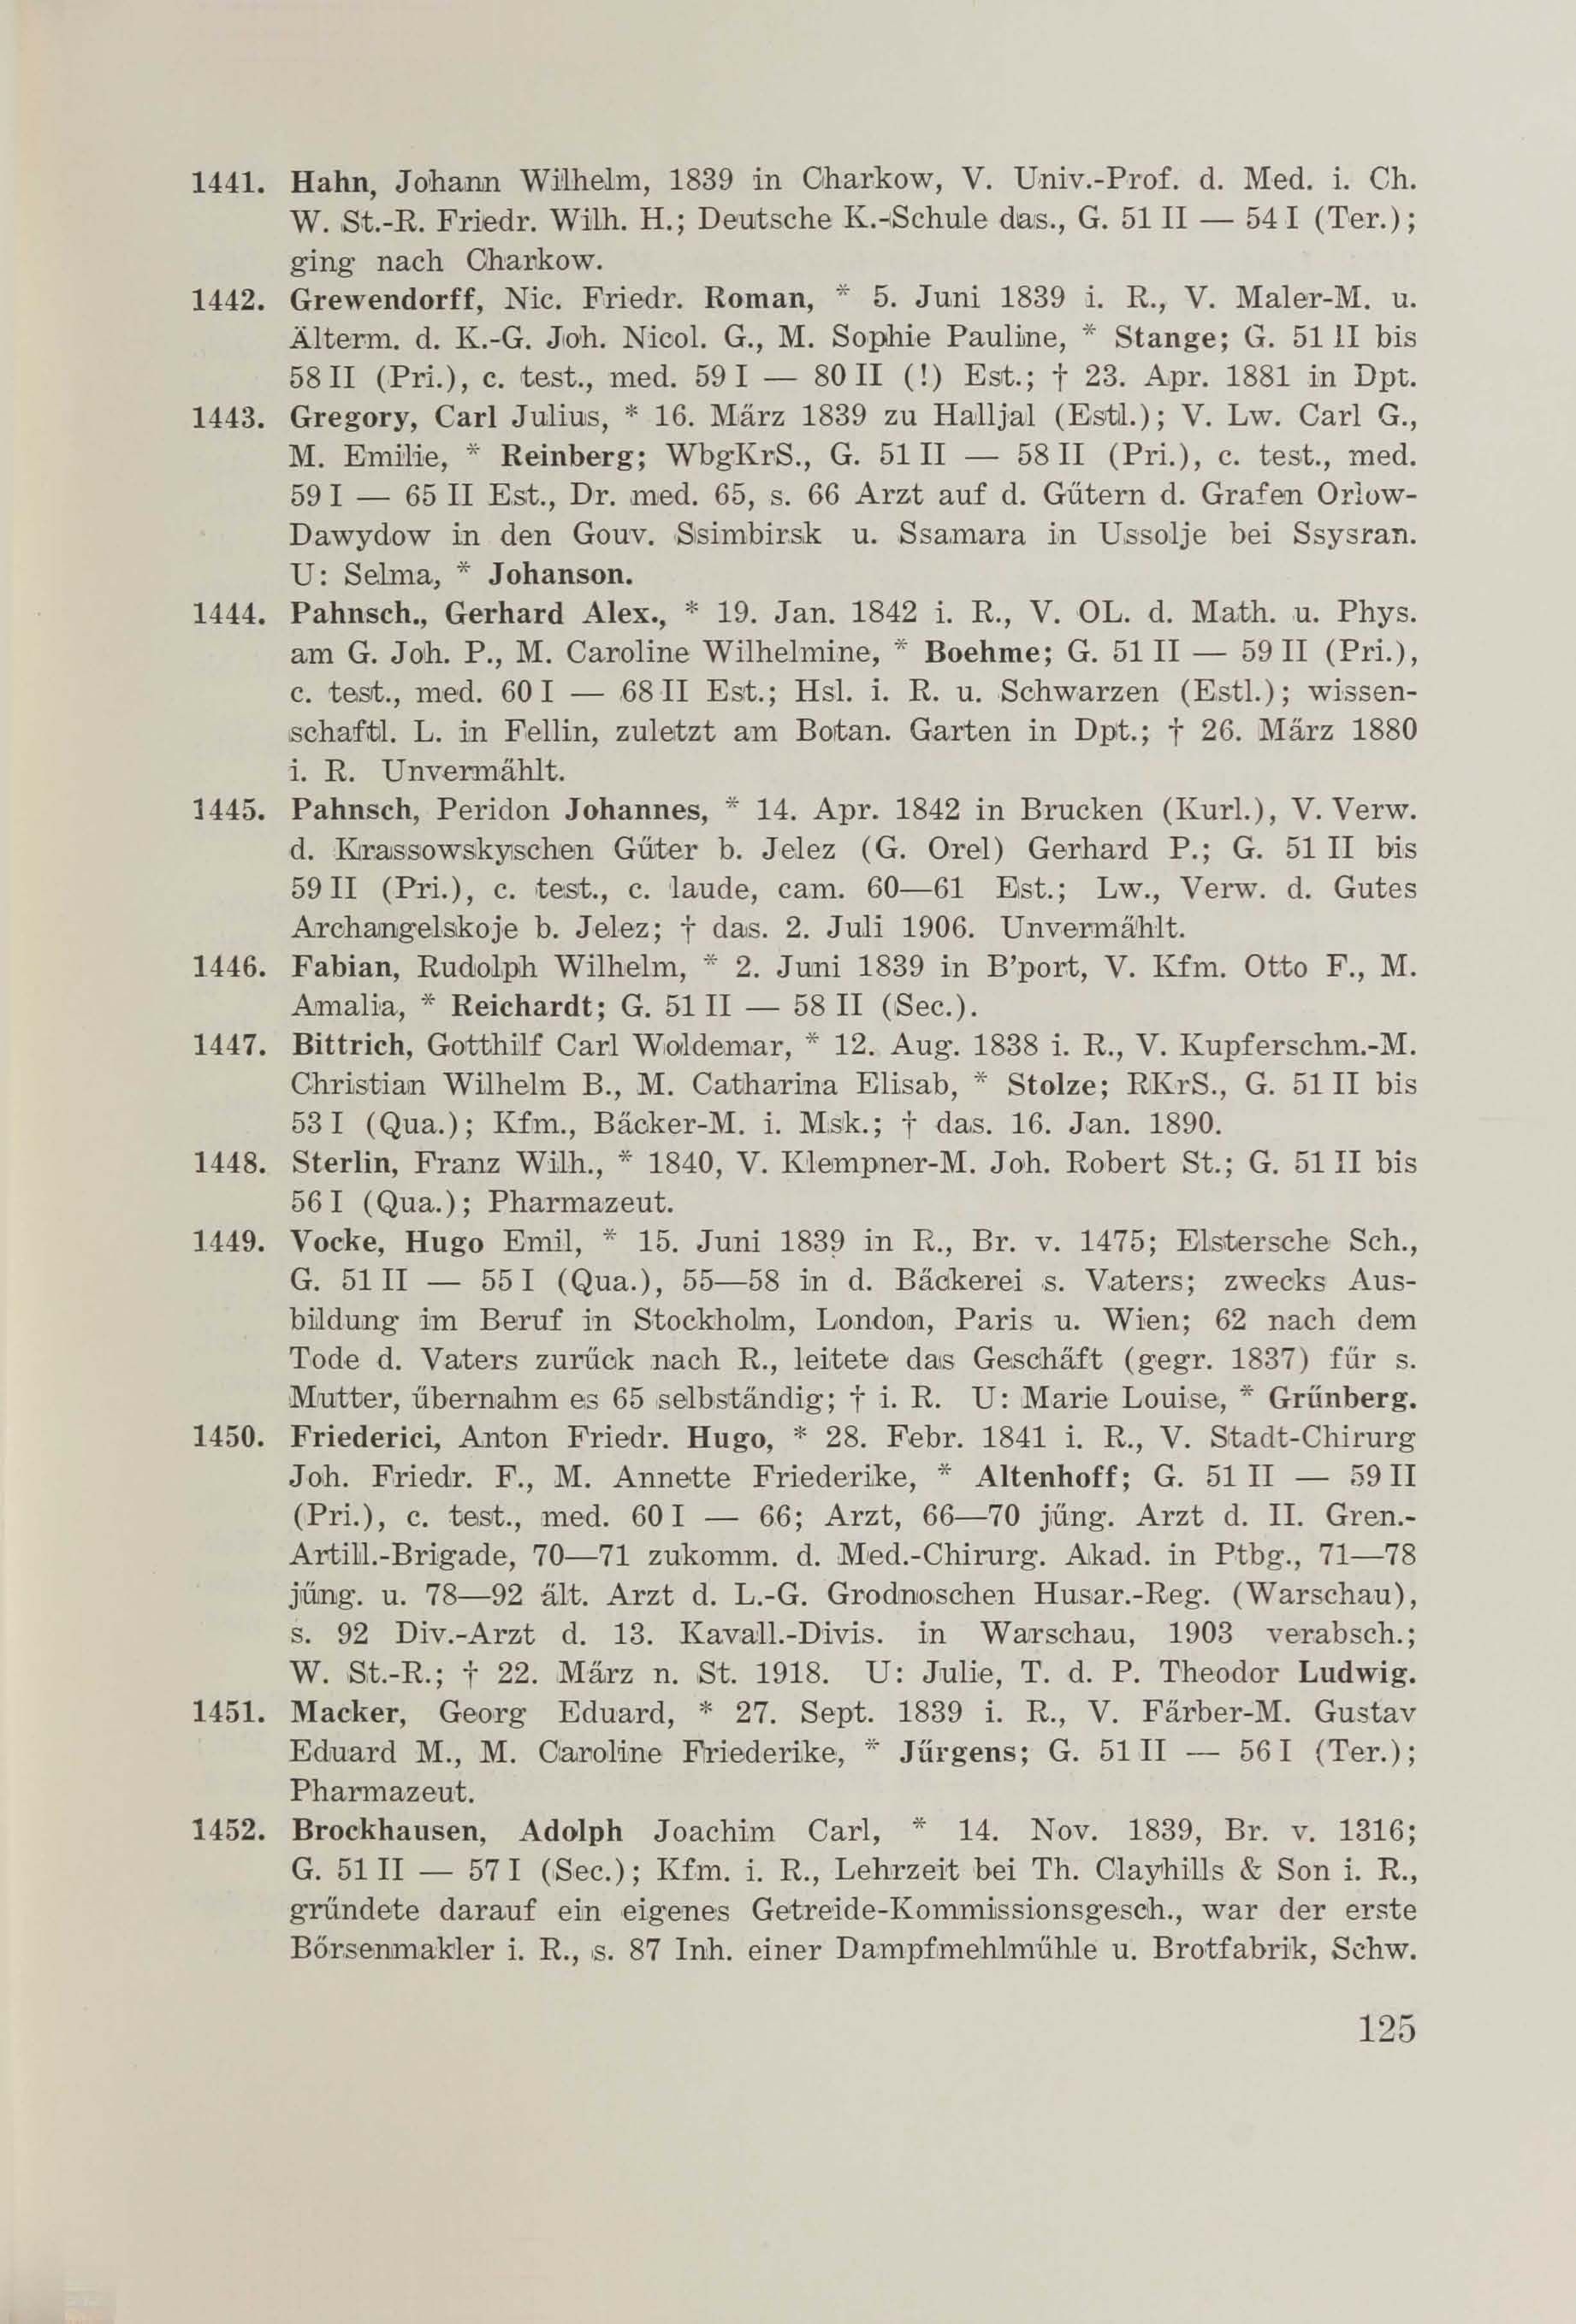 Schüler-Verzeichnis des Revalschen Gouvernements-Gymnasiums 1805–1890 (1931) | 135. (125) Main body of text